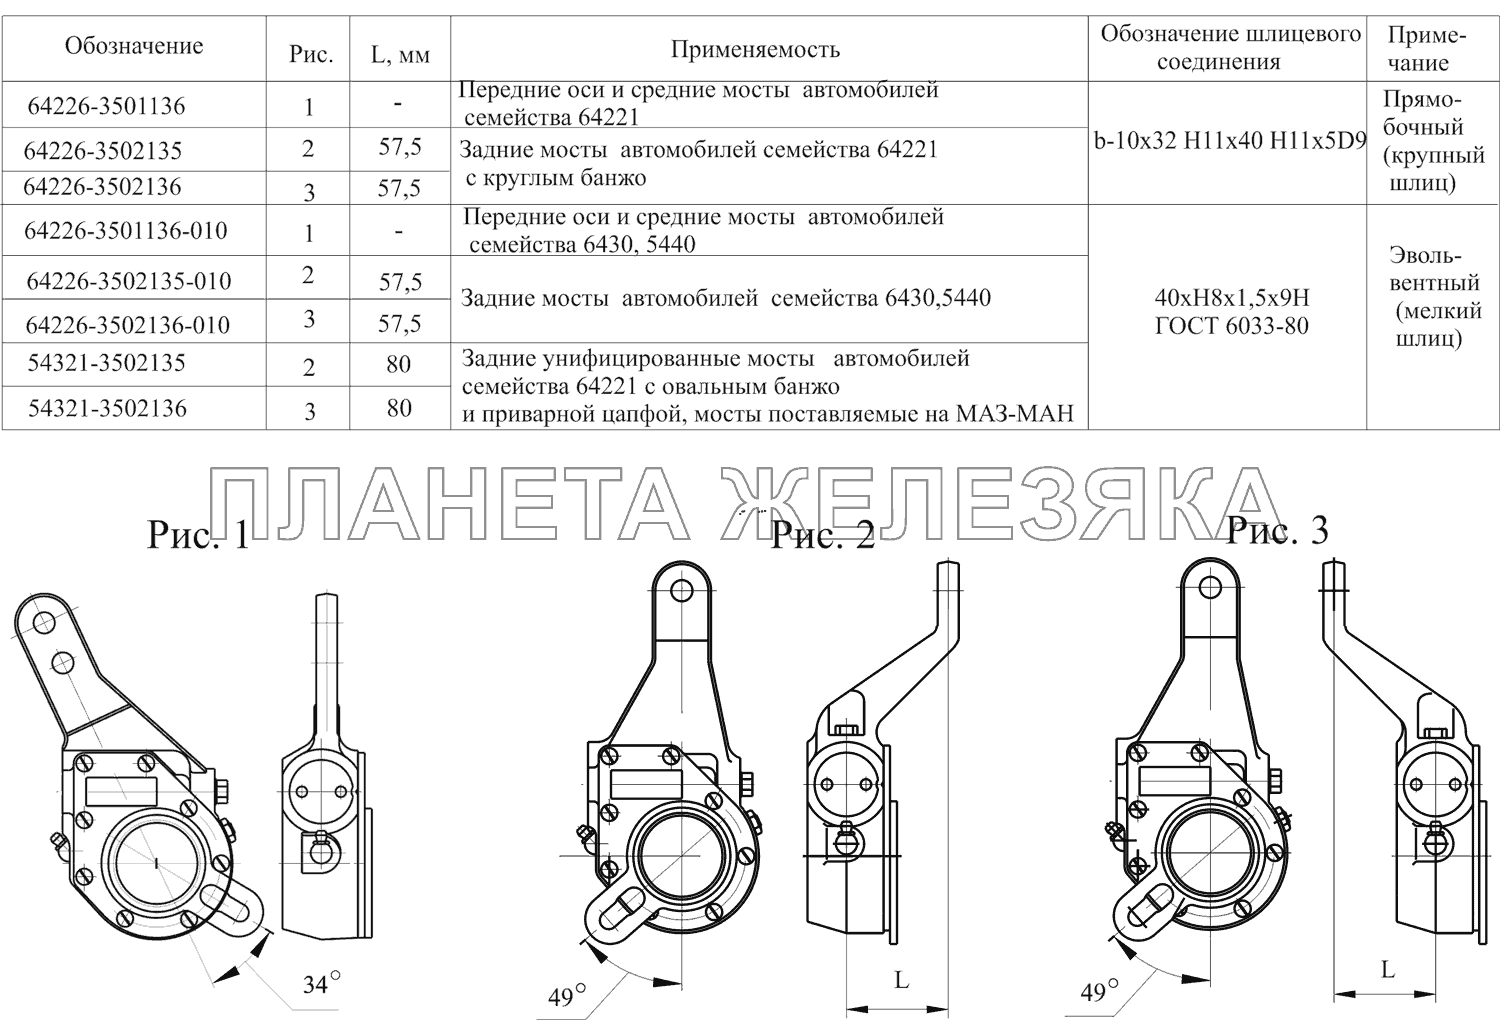 Автоматические регулировочные рычаги МАЗ-651669-320 (340)